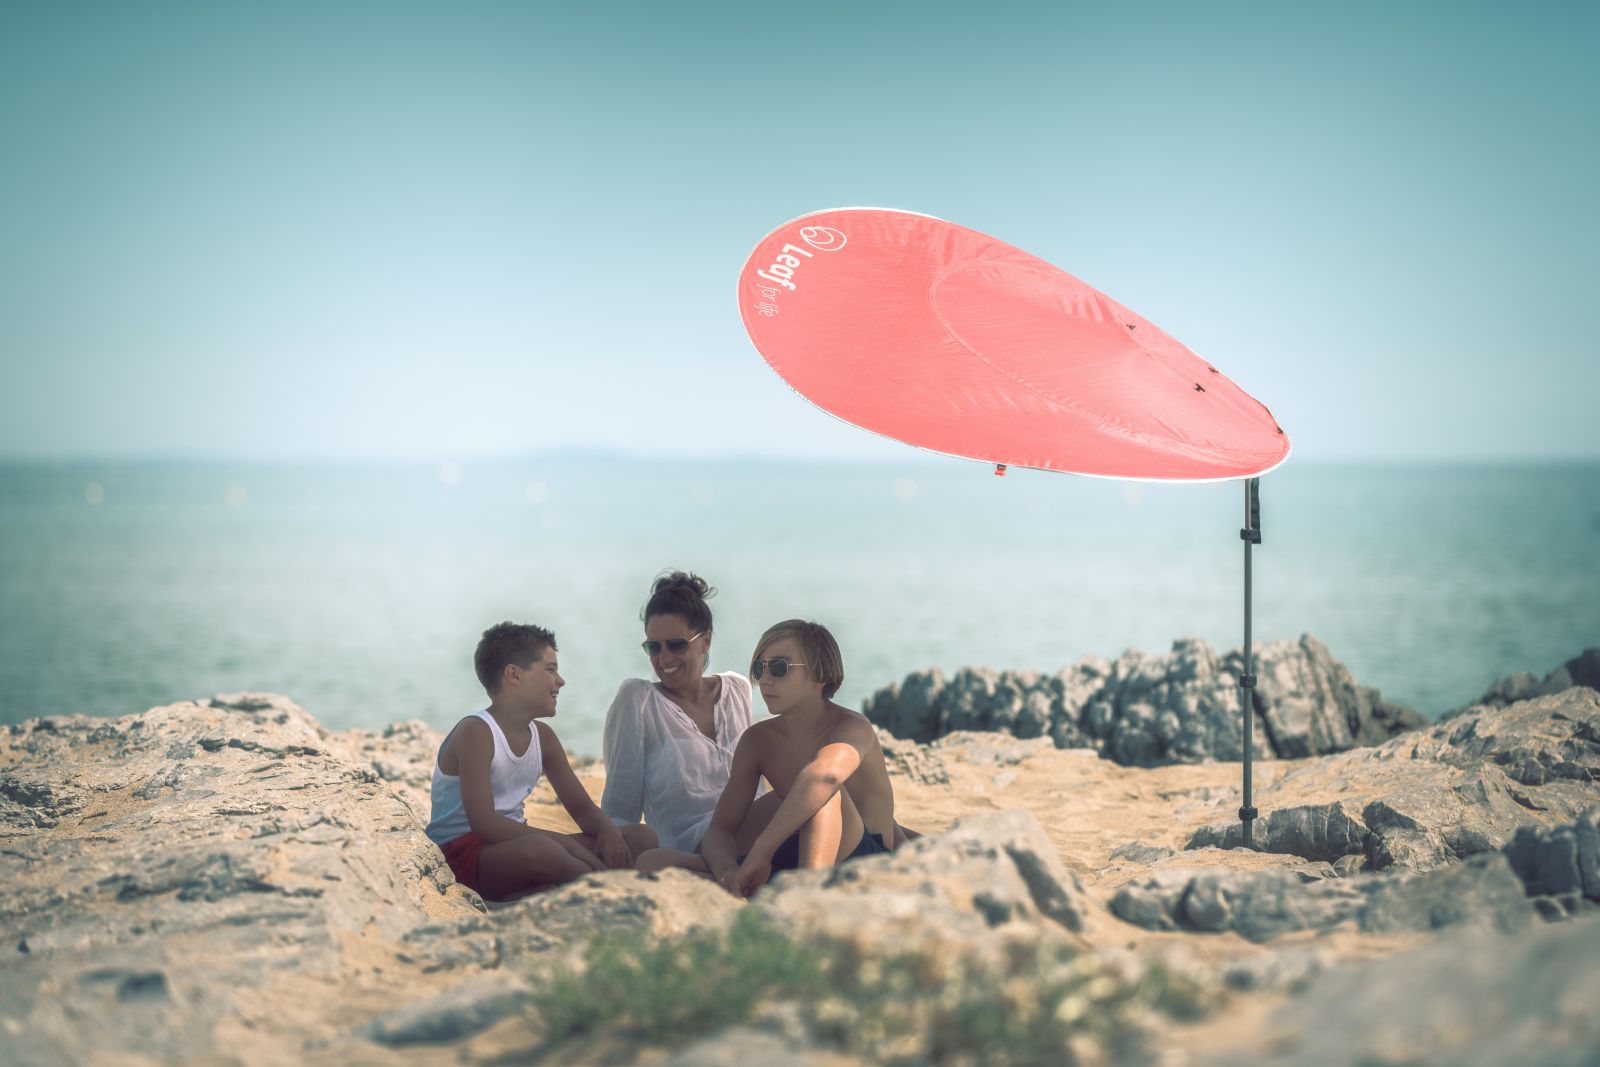 Communiqué de LEAF FOR LIFE, the parasol reinvented